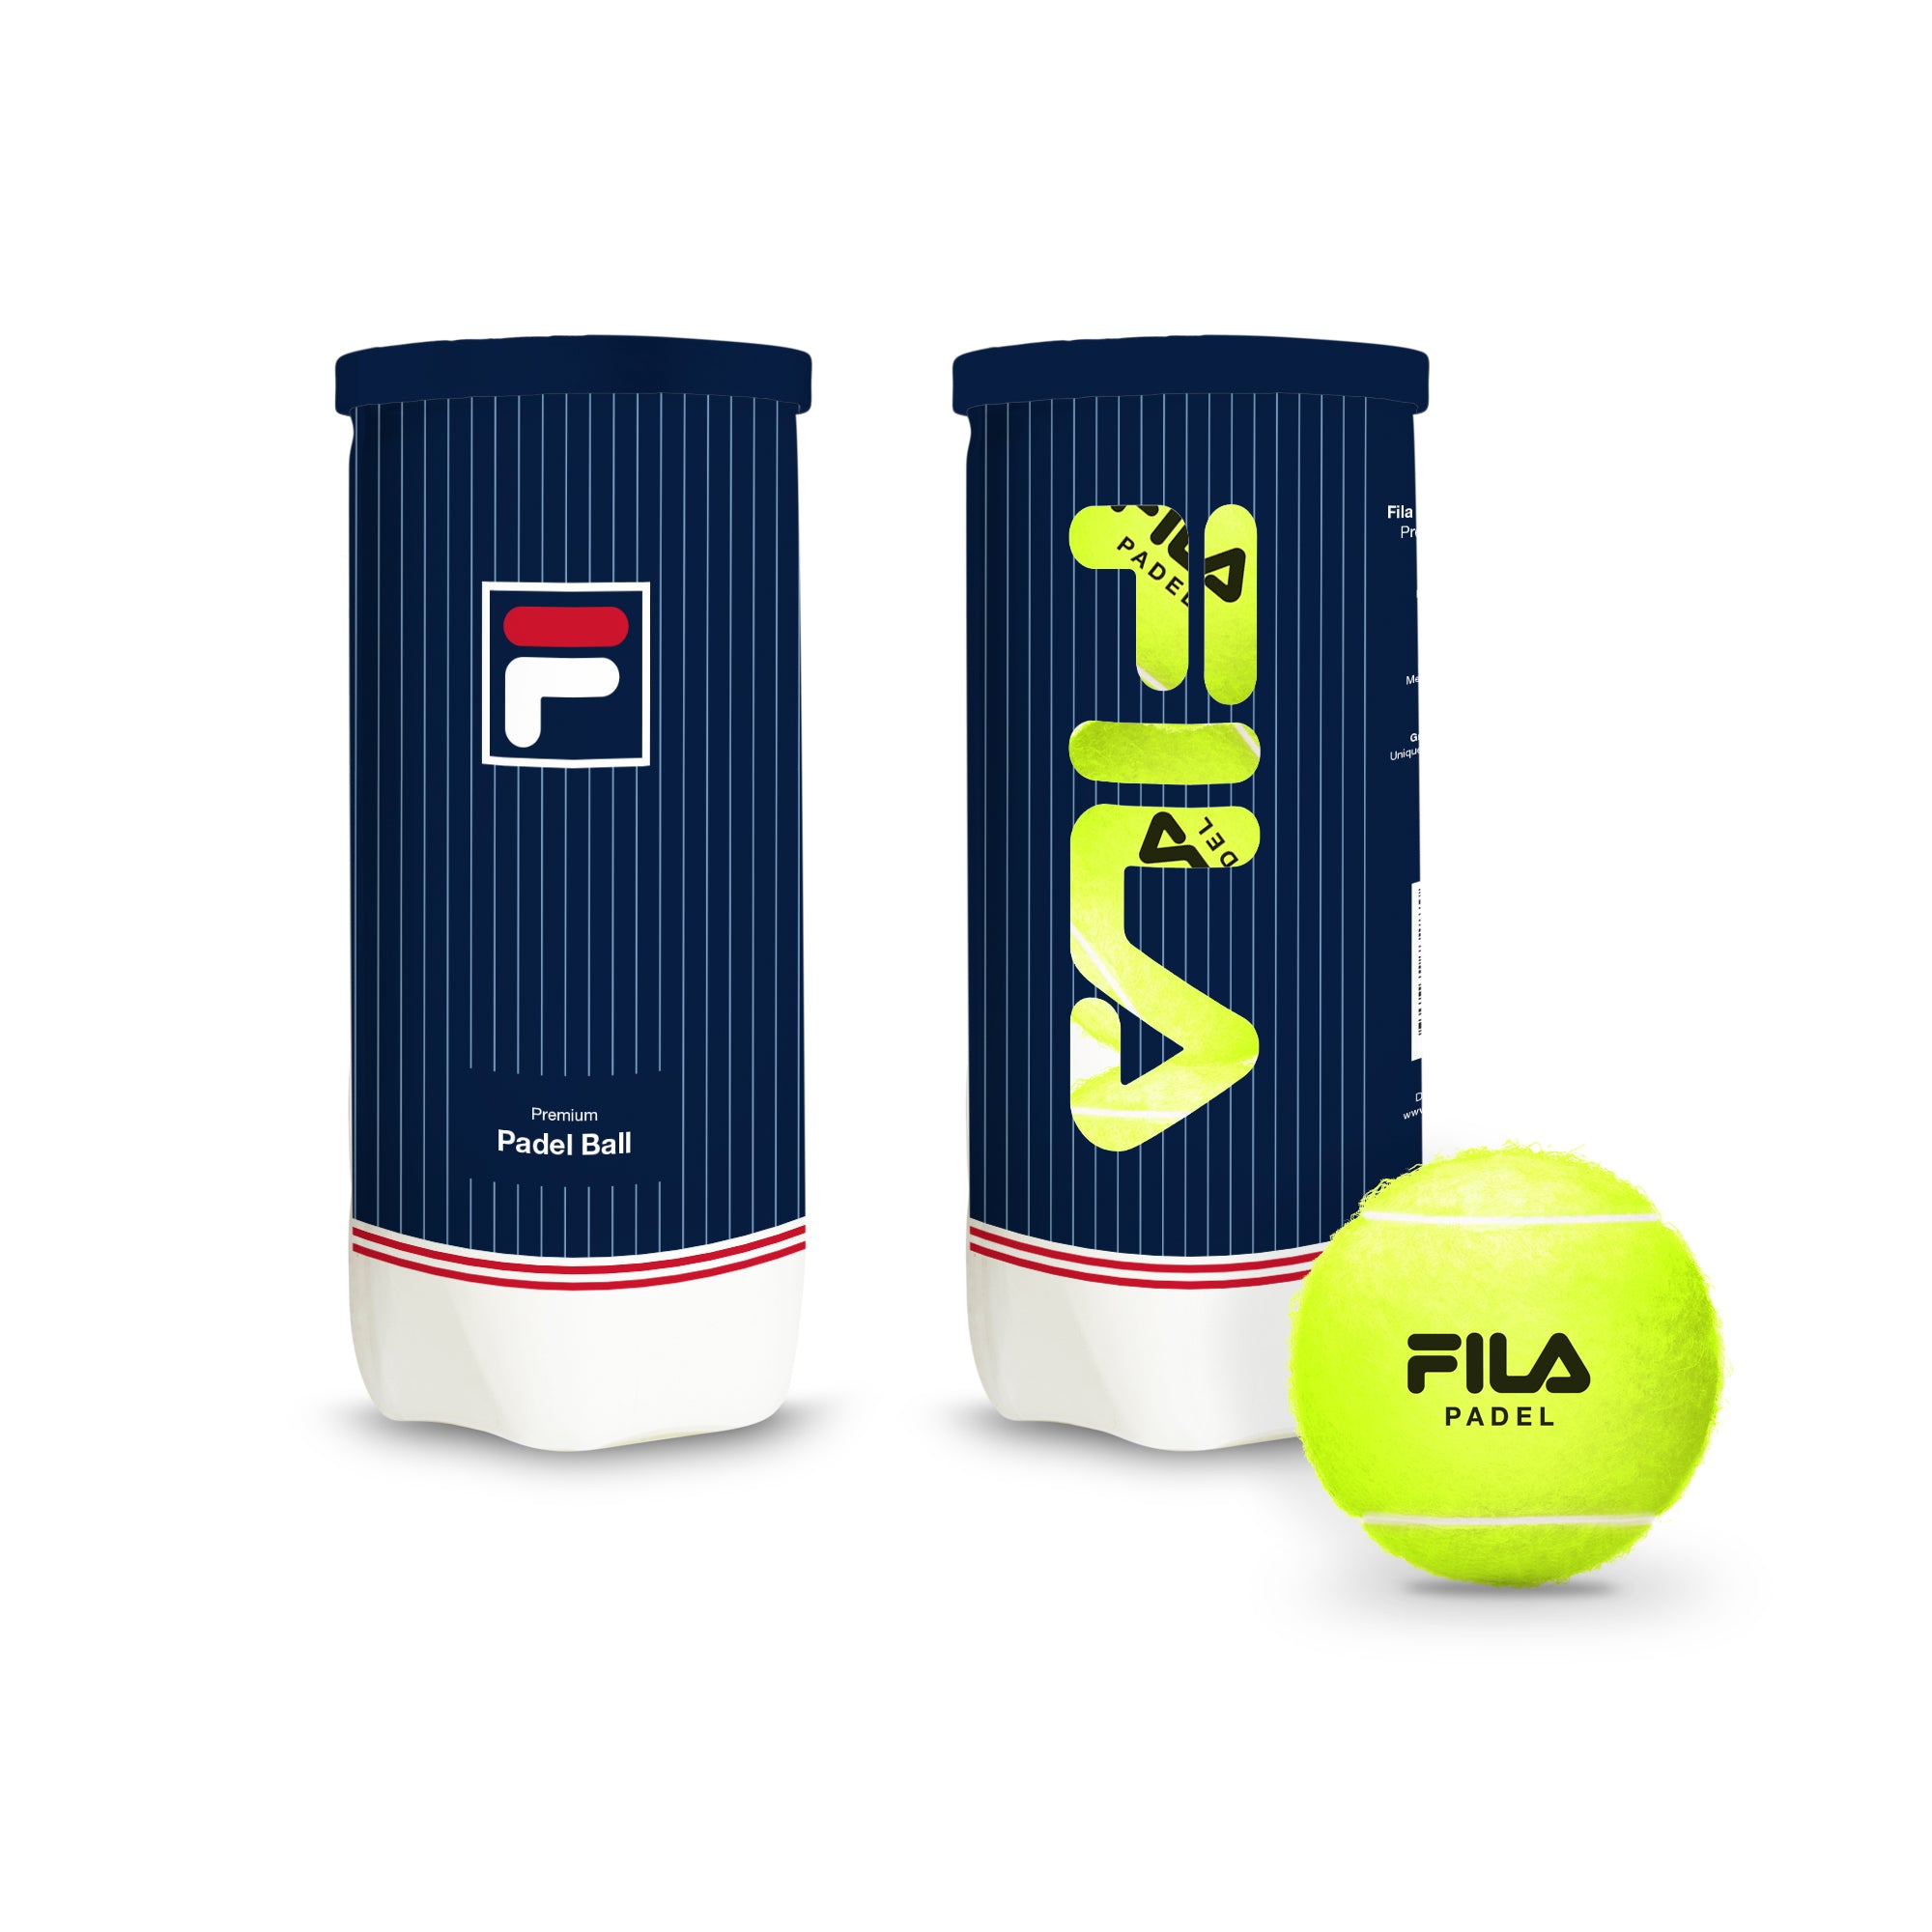 Padel Tennis Balls (3 Pack)